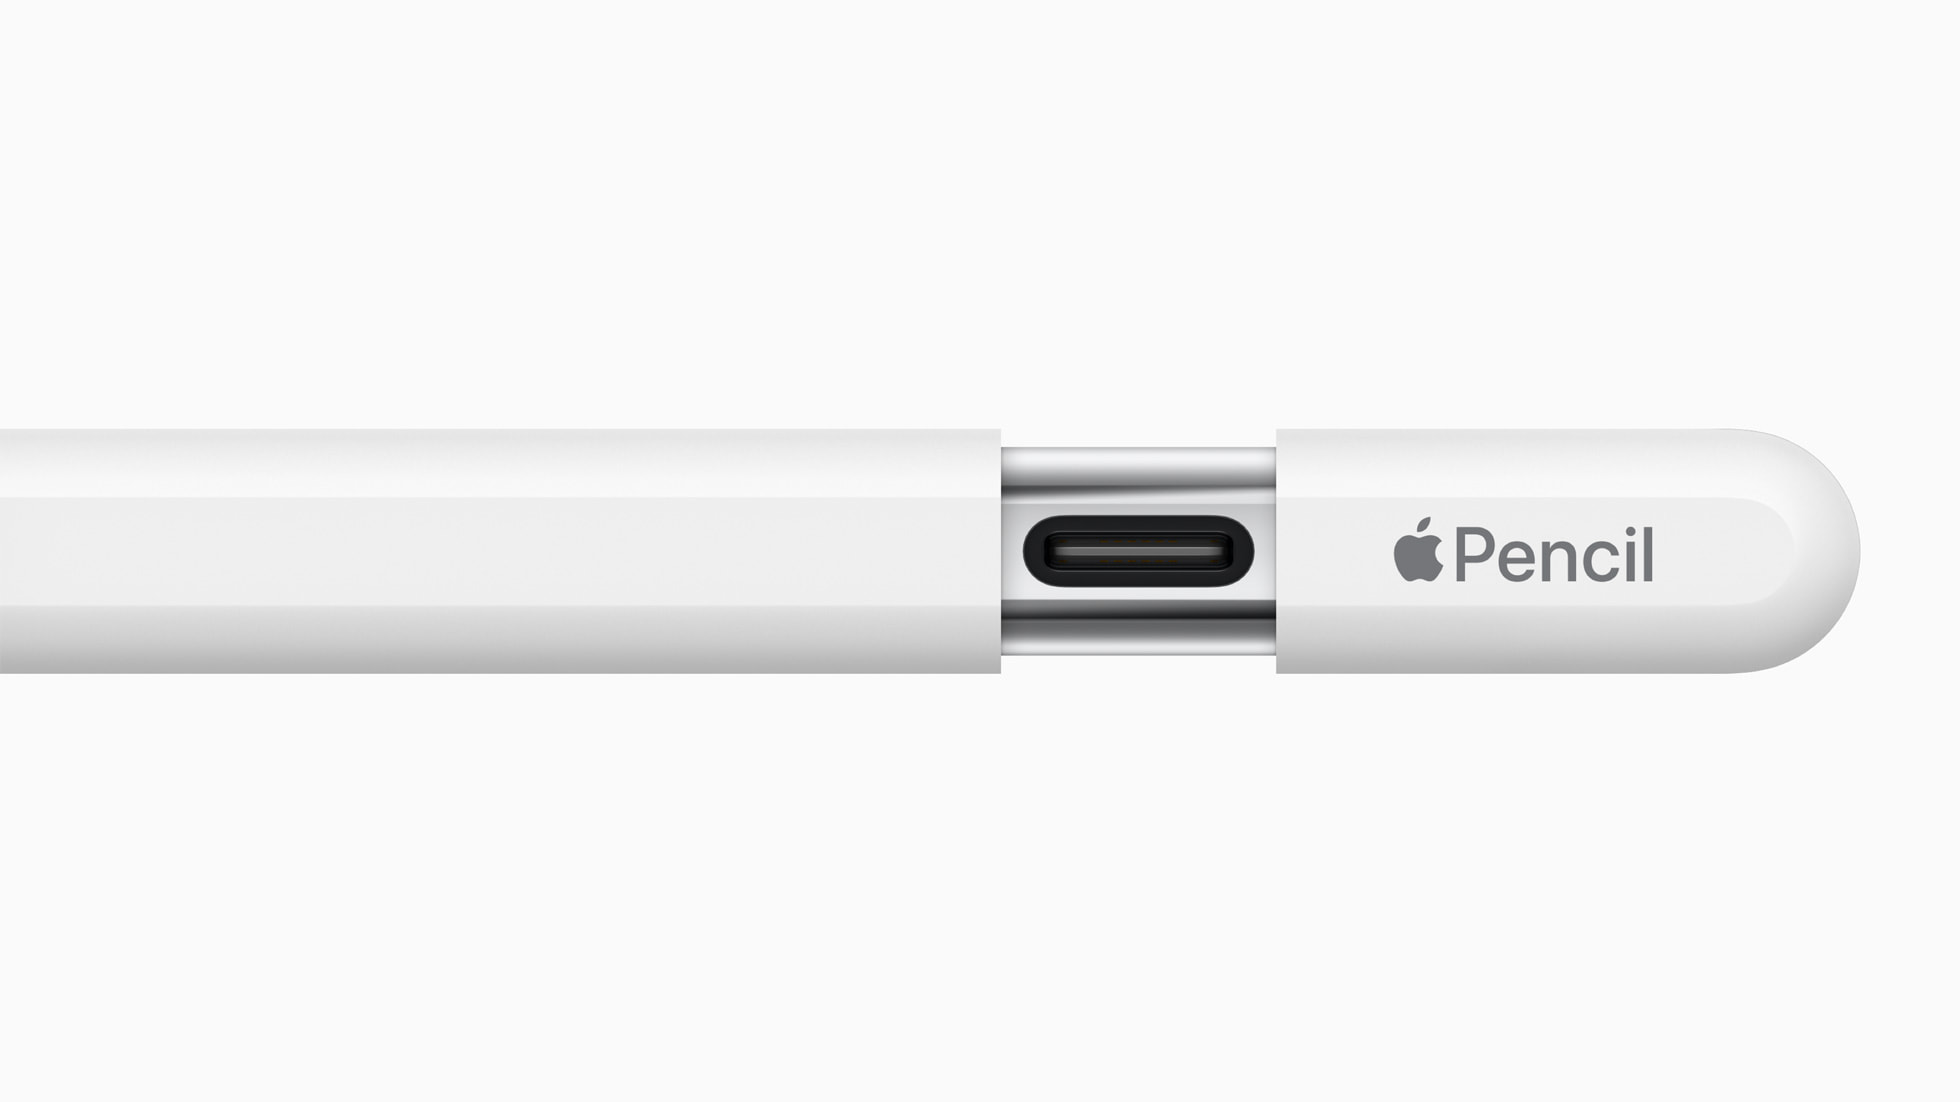 Apple afslører ny Pencil med USB-C-port og forenklede funktioner til 79 dollars